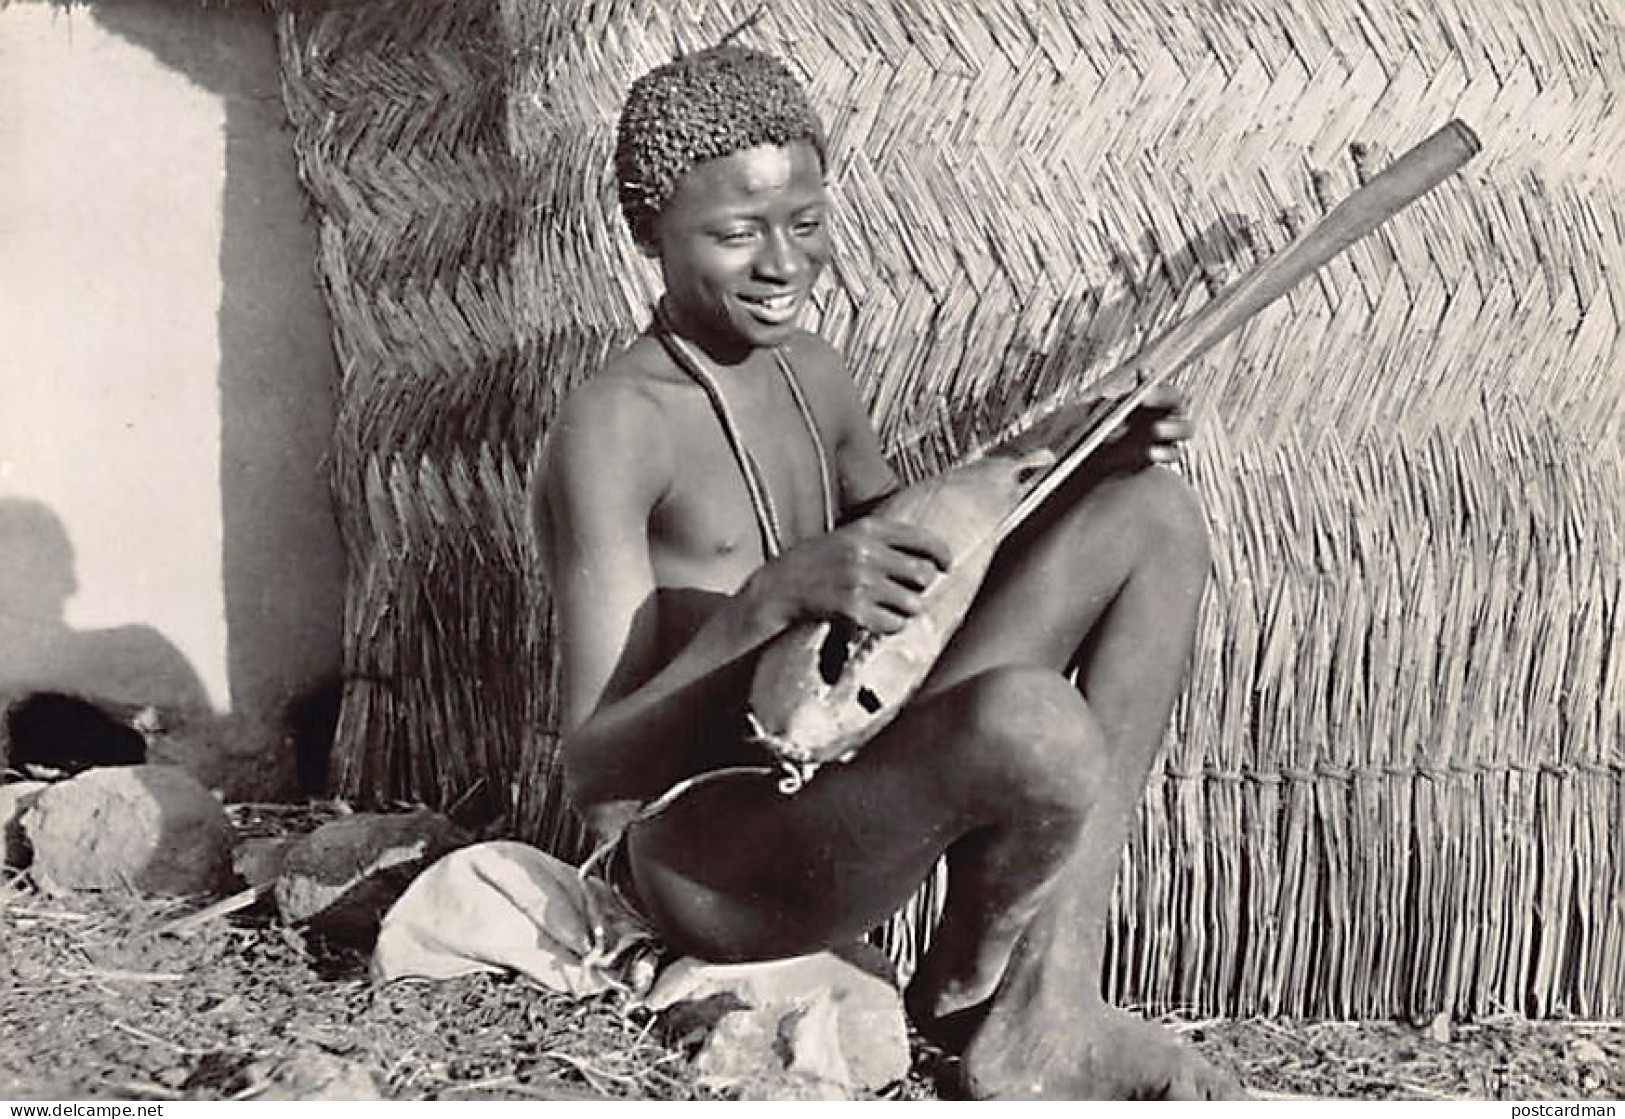 Cameroun - Musicien Fali - TAILLE DE LA CARTE POSTALE 15 Cm. Par 10 Cm. - POSTCARD SIZE 15 Cm. By 10 Cm. (5.9 In By 3.9  - Cameroun